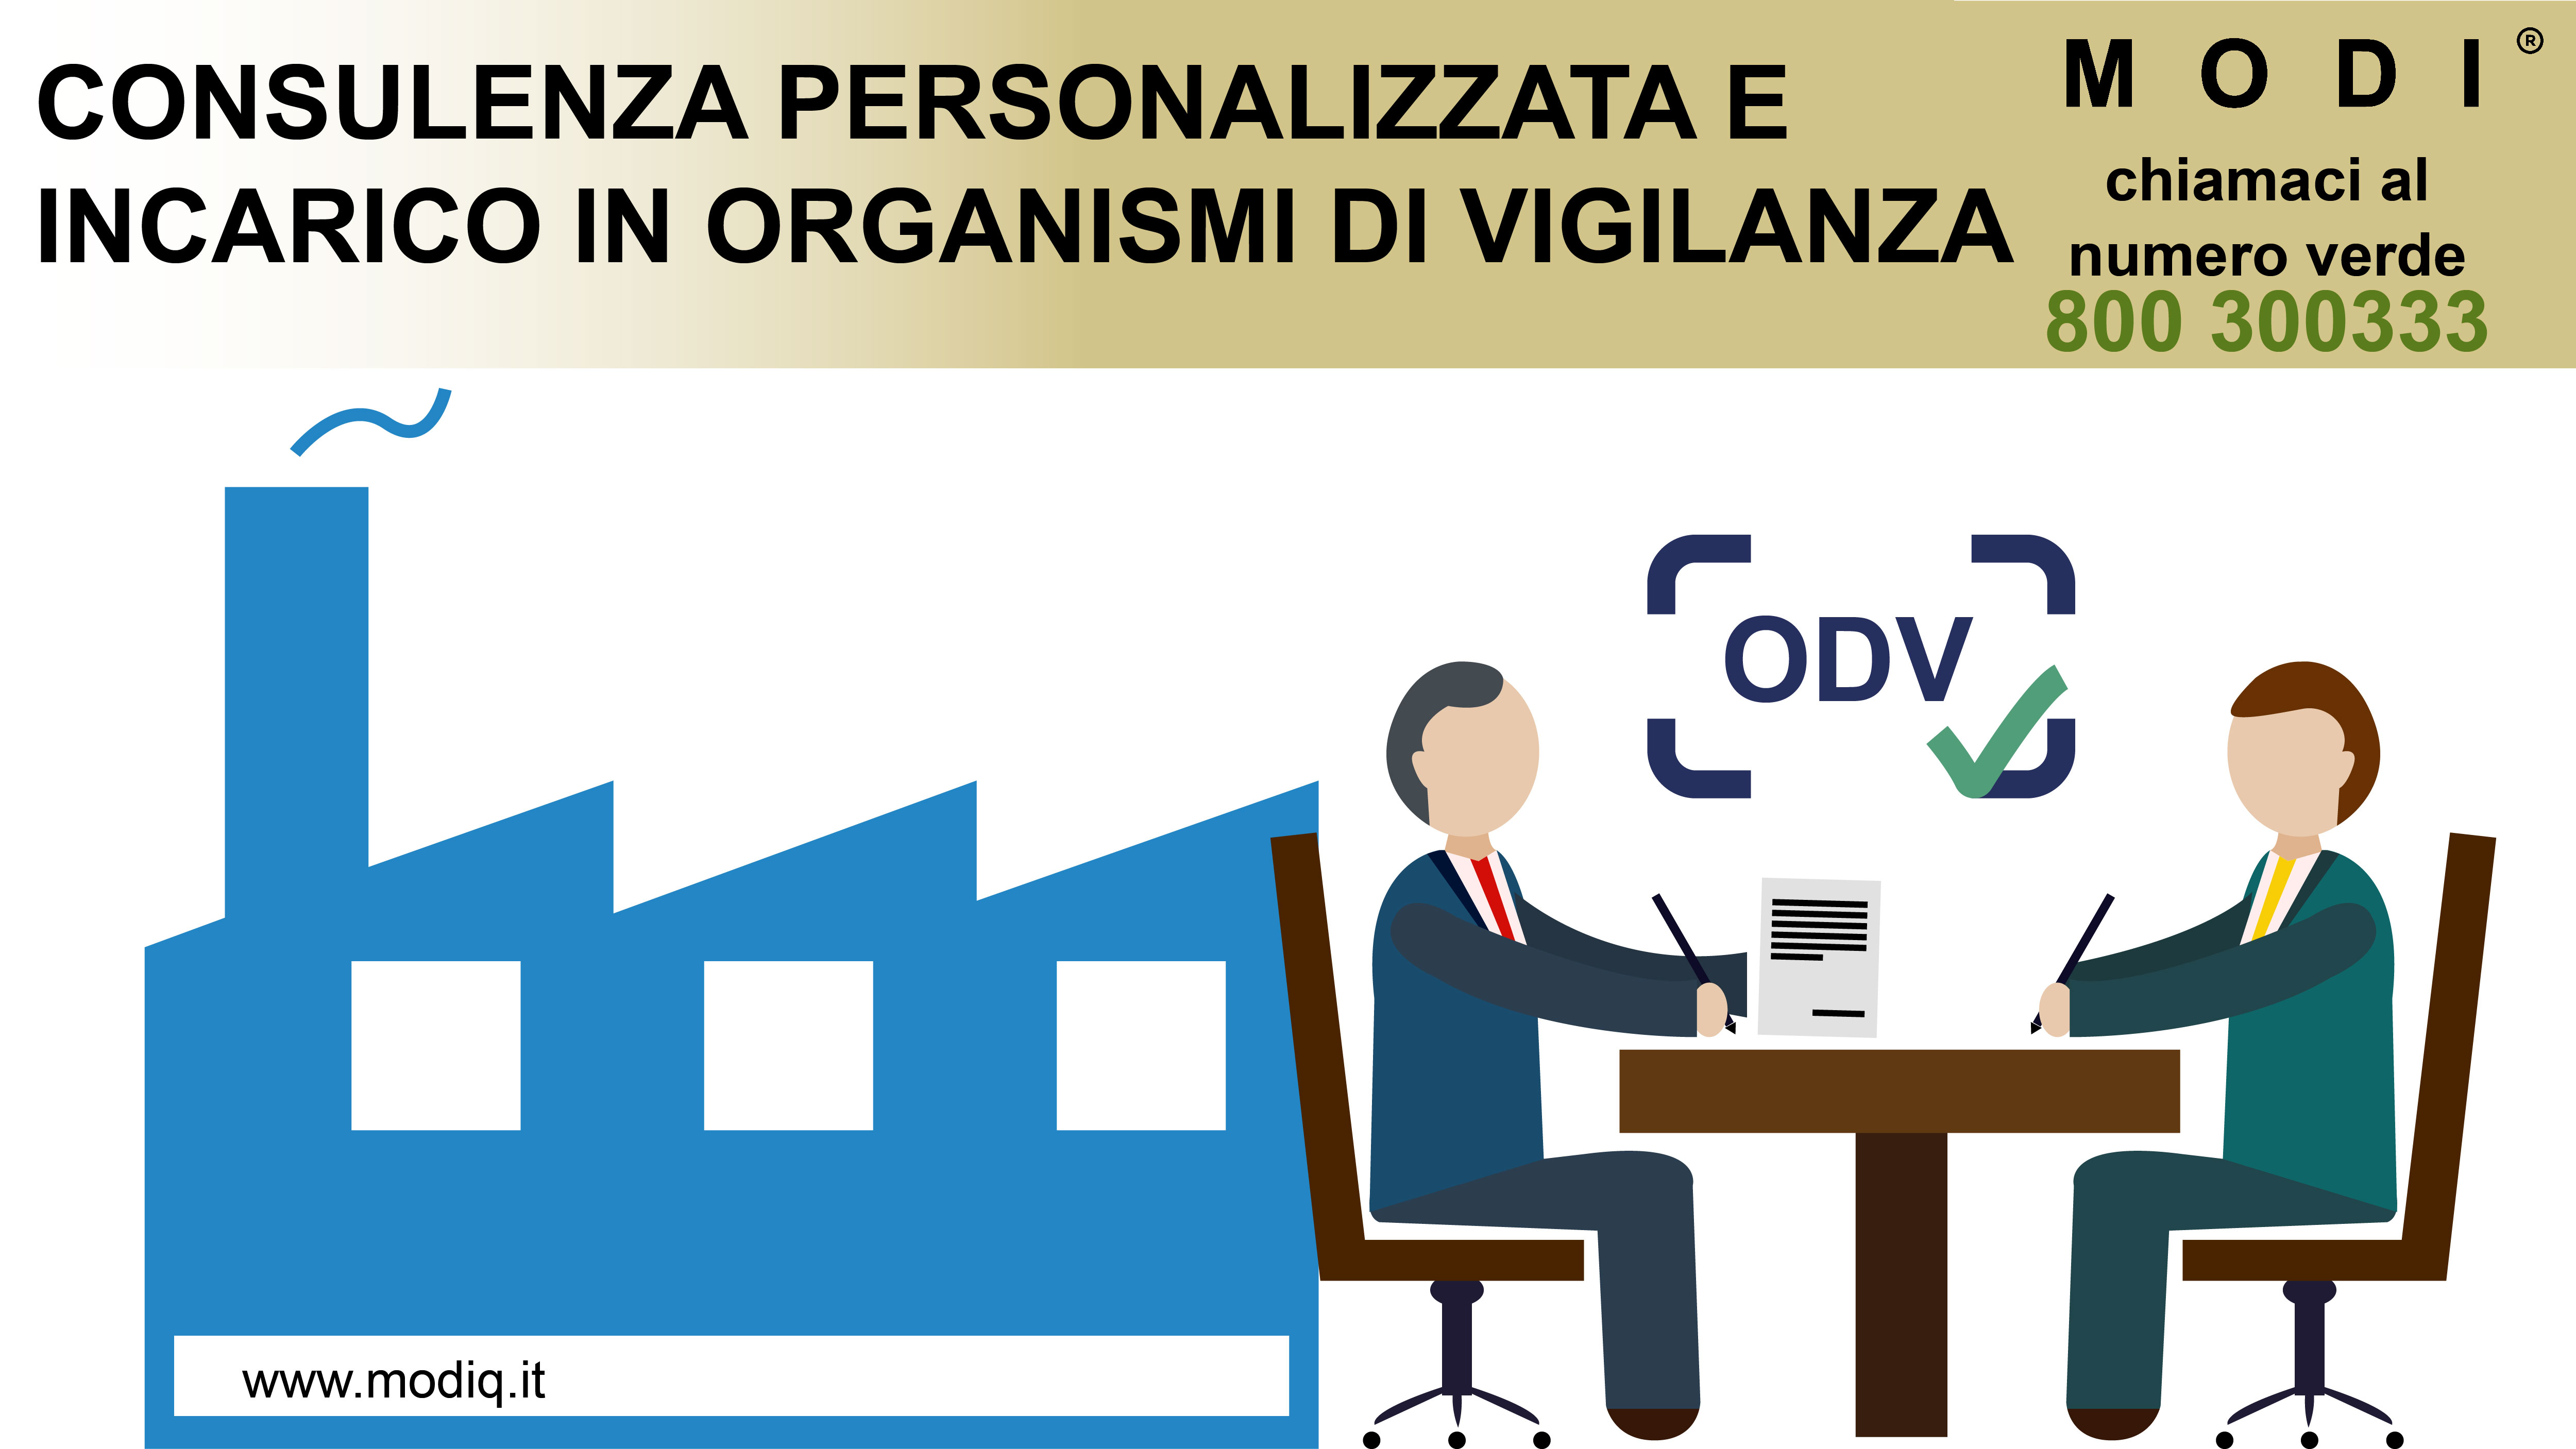 consulenza con preventivo personalizzato sull'assunzione di un incaricato per ODV, organismo di vigilanza.